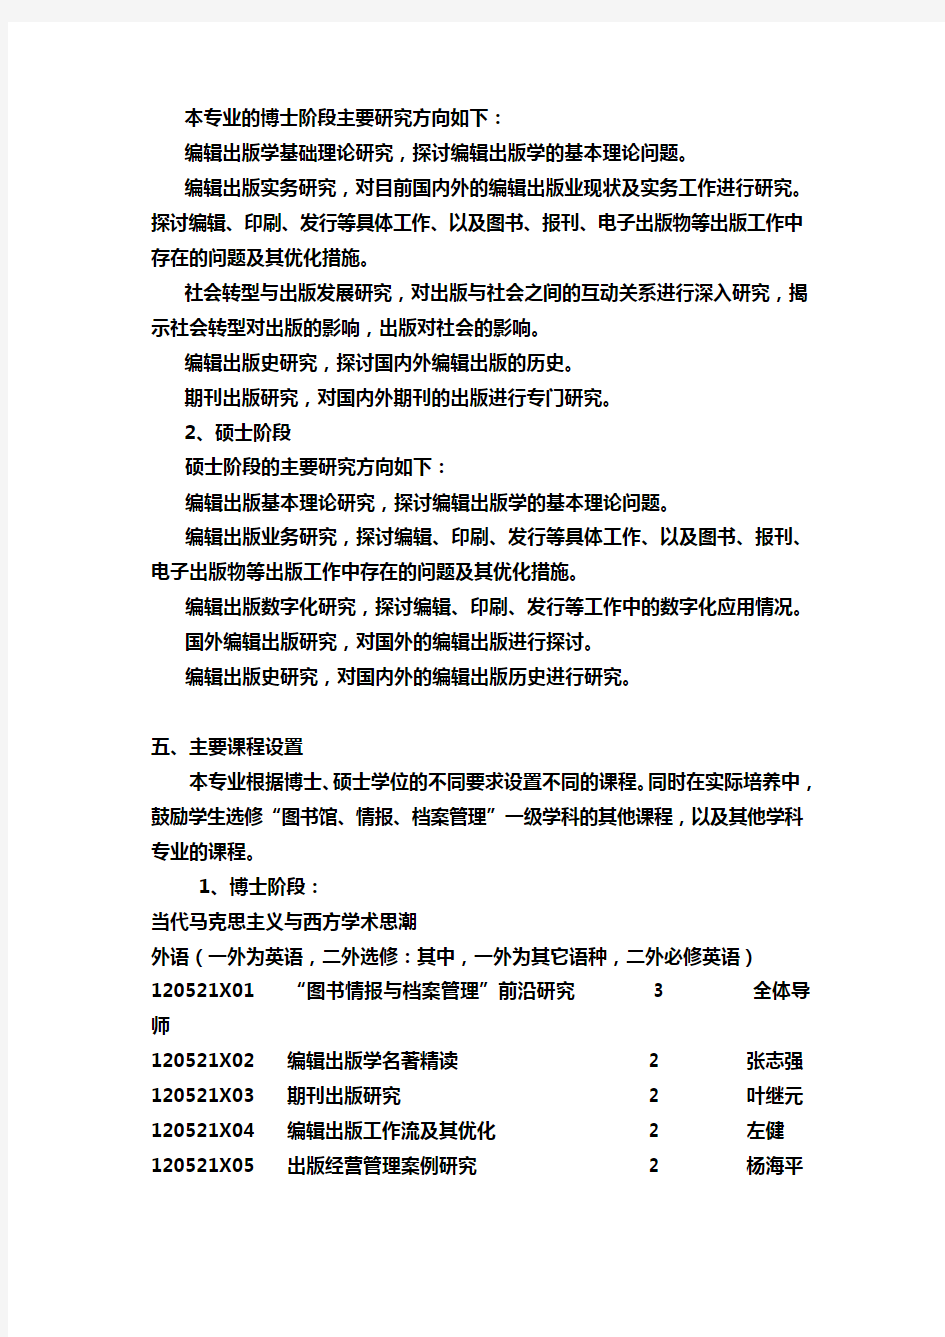 编辑出版学专业(120521)研究生培养方案 - 南京大学研究生院